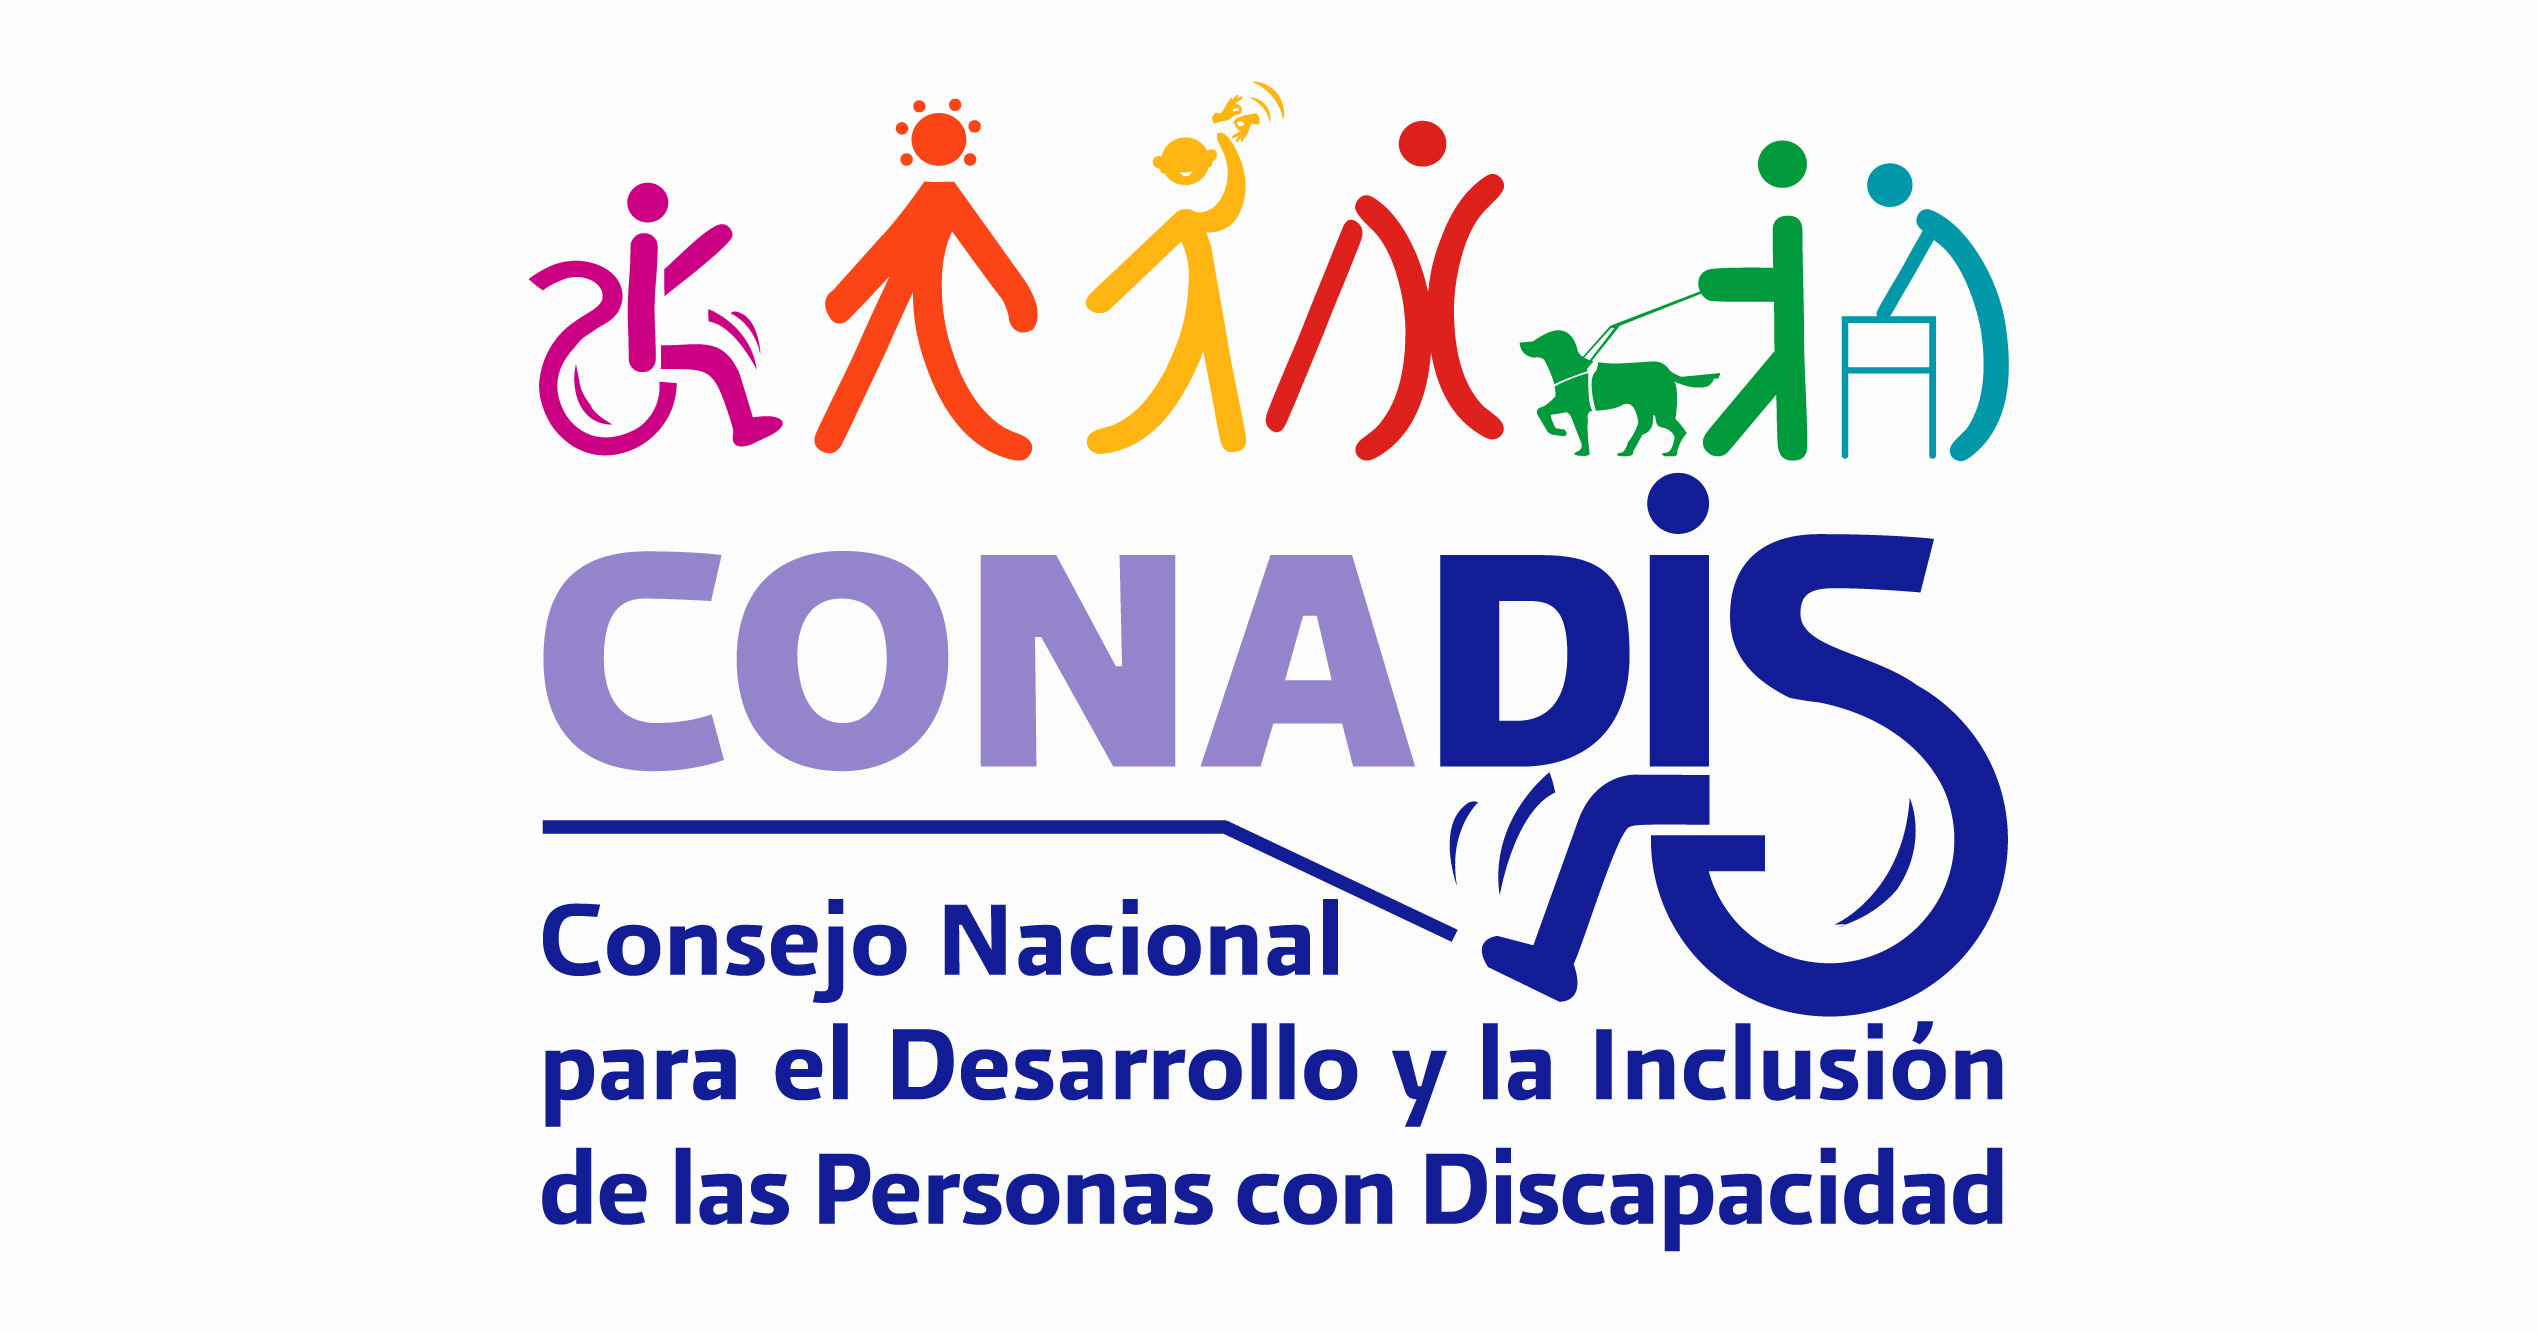 CONADIS. Consejo Nacional para el Desarrollo y la Inclusión de las Personas con Discapacidad 